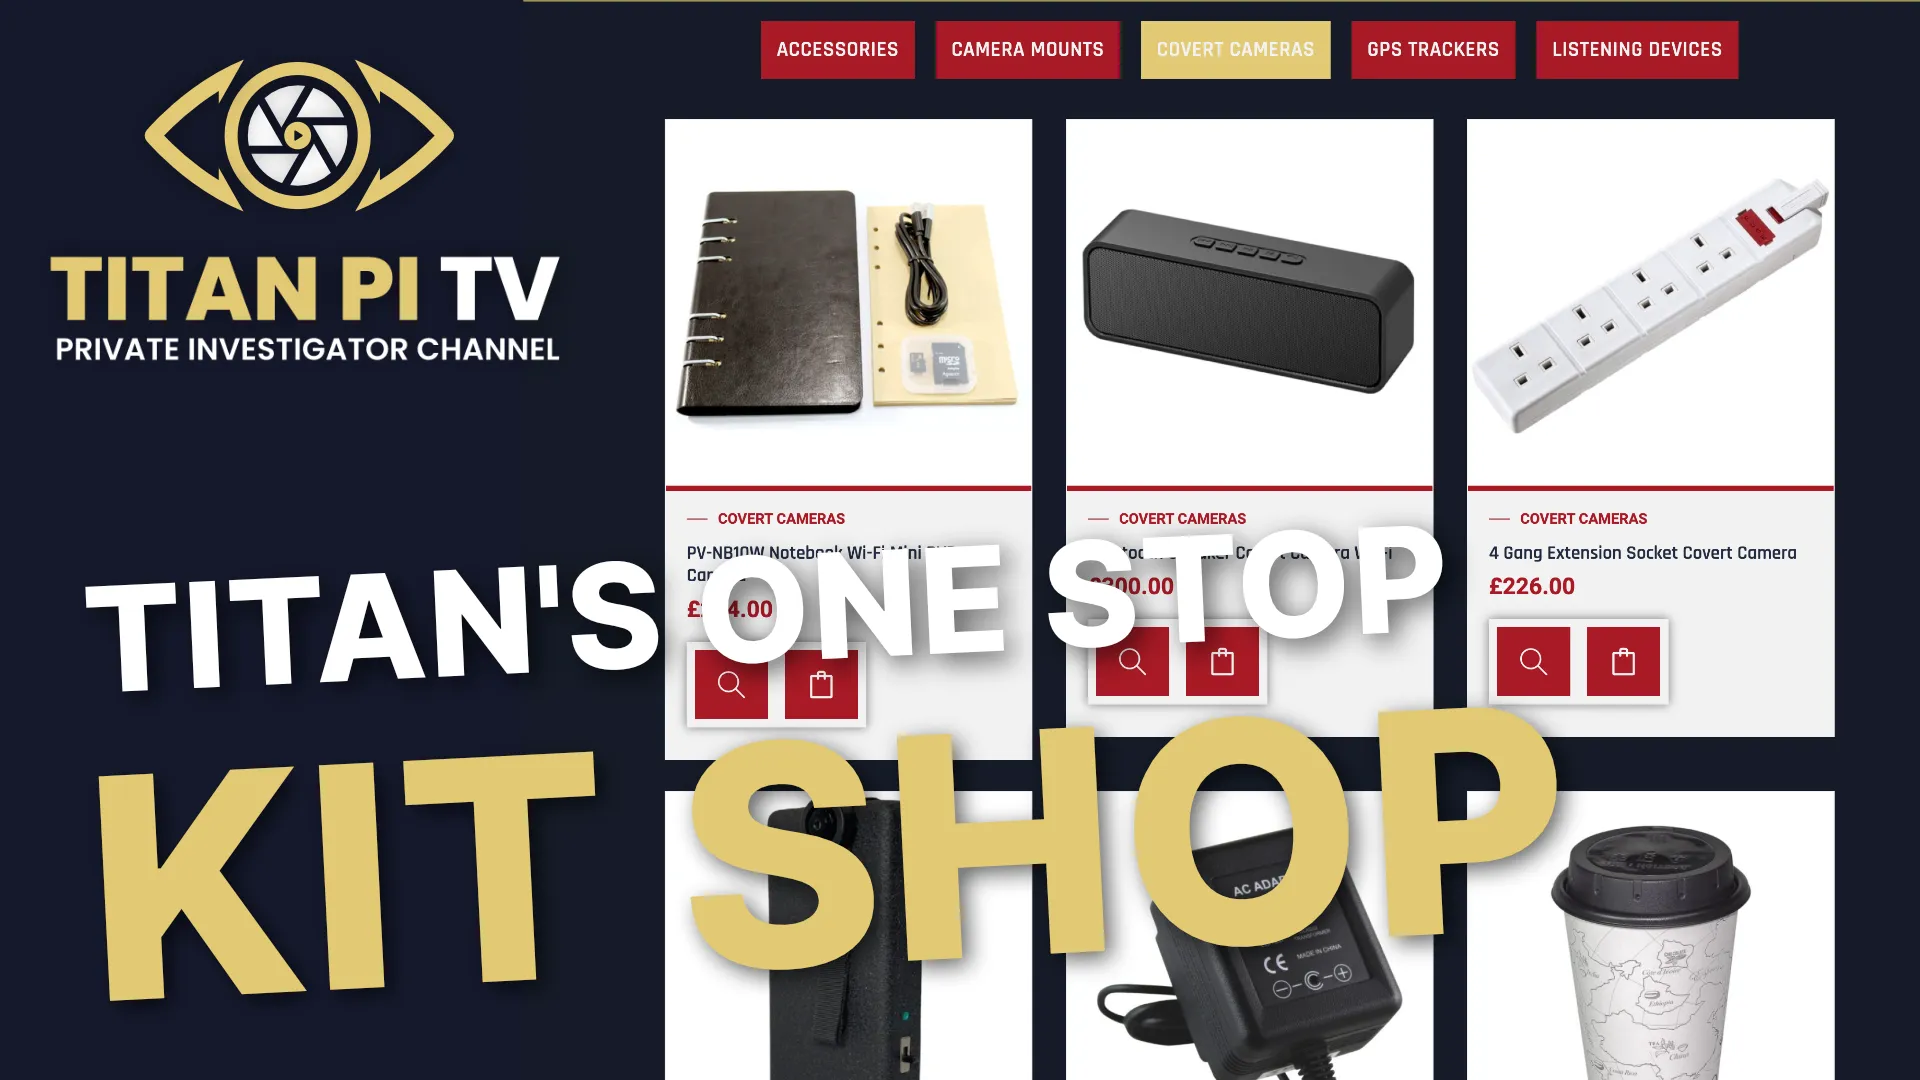 Titan's One Stop Kit Shop Episode 60 | Titan PI TV